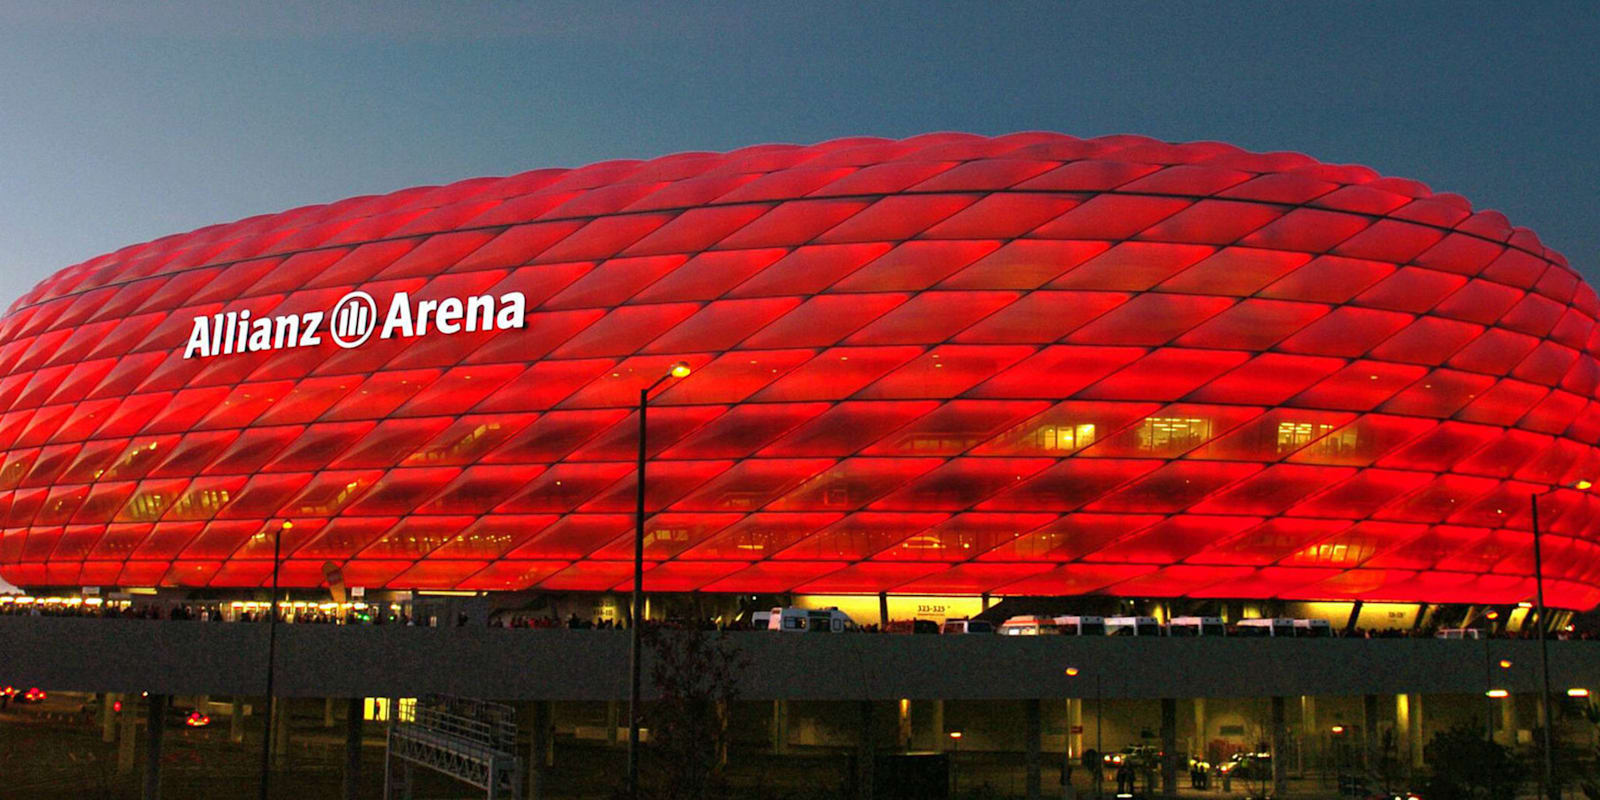 Bayern's home